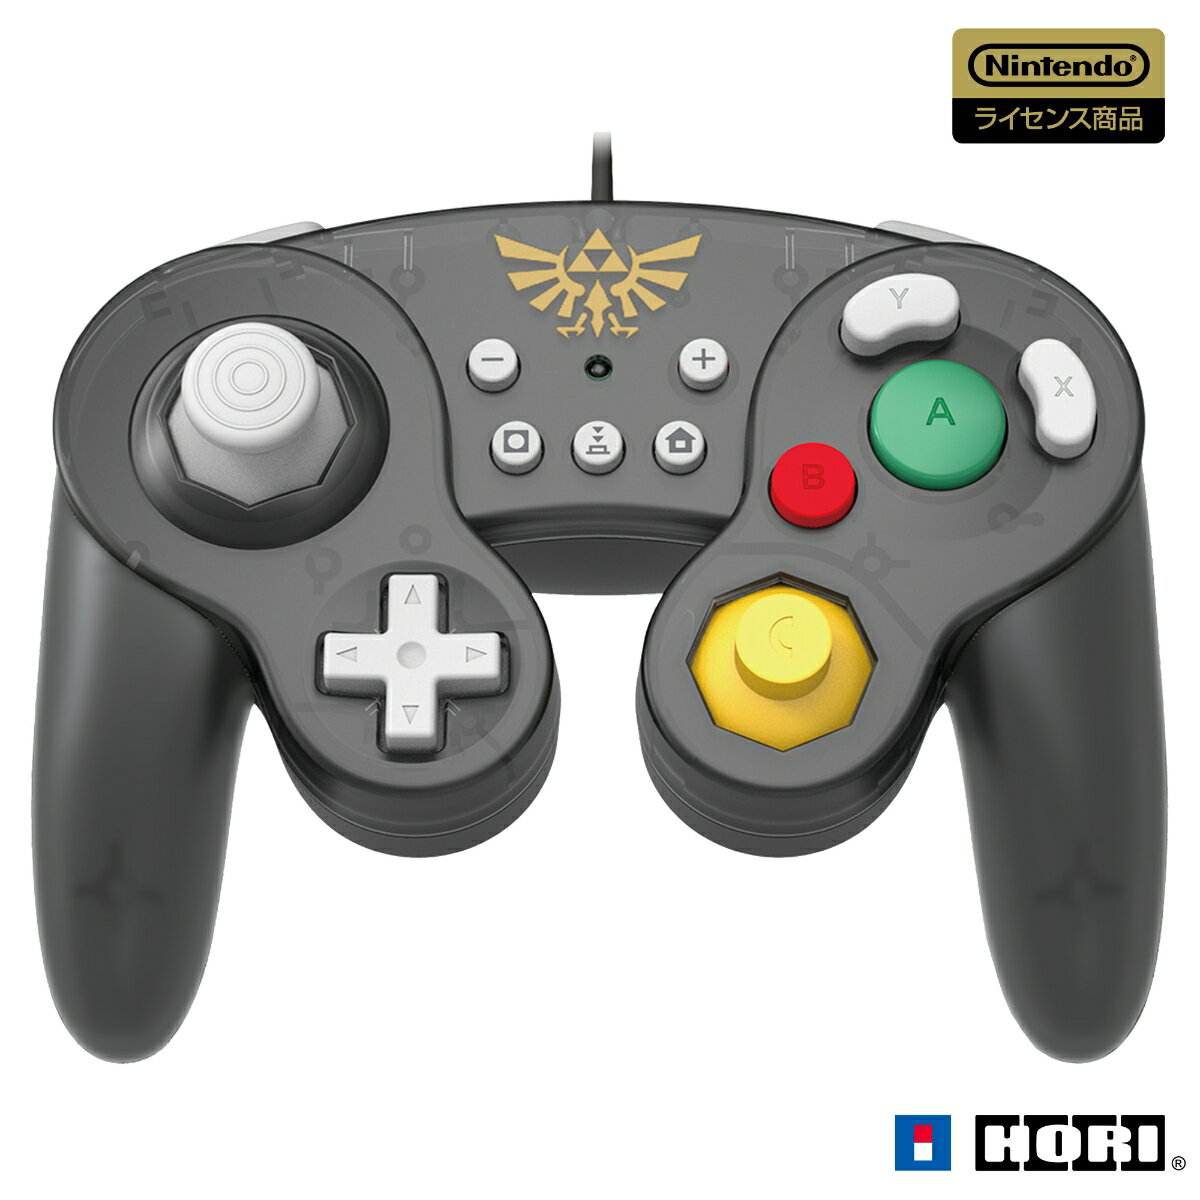 おなじみ形状のコントローラーが登場！

Nintendo Switch用ゲームパッドです。
長時間ゲームプレイしても疲れにくい軽量設計です。



■ 押しやすい形状のボタン大きくて押しやすい形状のボタンで、快適にゲームを楽しむことができます。
また、L/RとZL/ZRのボタン機能の割り当てを切り替えることができます。
お客様の遊びやすいボタン配置でゲームプレイをすることができます。


■ 3段階の連射機能搭載秒間約5・10・20回の3段階で連射、連射ホールドが設定可能です。 

設定可能ボタンAボタン / Bボタン / Xボタン / Yボタン / Lボタン / Rボタン / ZLボタン / ZRボタン / 十字ボタン（上下左右） 
※十字ボタンは、連射のみ設定可能です。


■ USB接続
Nintendo SwitchドックにUSB接続 してゲームプレイができます。 複数台接続可能。




※本品はNintendo Switch ドックに接続してご使用ください。Nintendo Switch本体には接続できません。 
※本品は右の機能を搭載しておりません。これらの機能を使用するゲームでは快適にプレイすることができません。 
※任天堂純正のJoy-ConやNintendo Switch Proコントローラーとはボタン配置が異なりますので、ゲームによっては遊びにくい場合がございます。